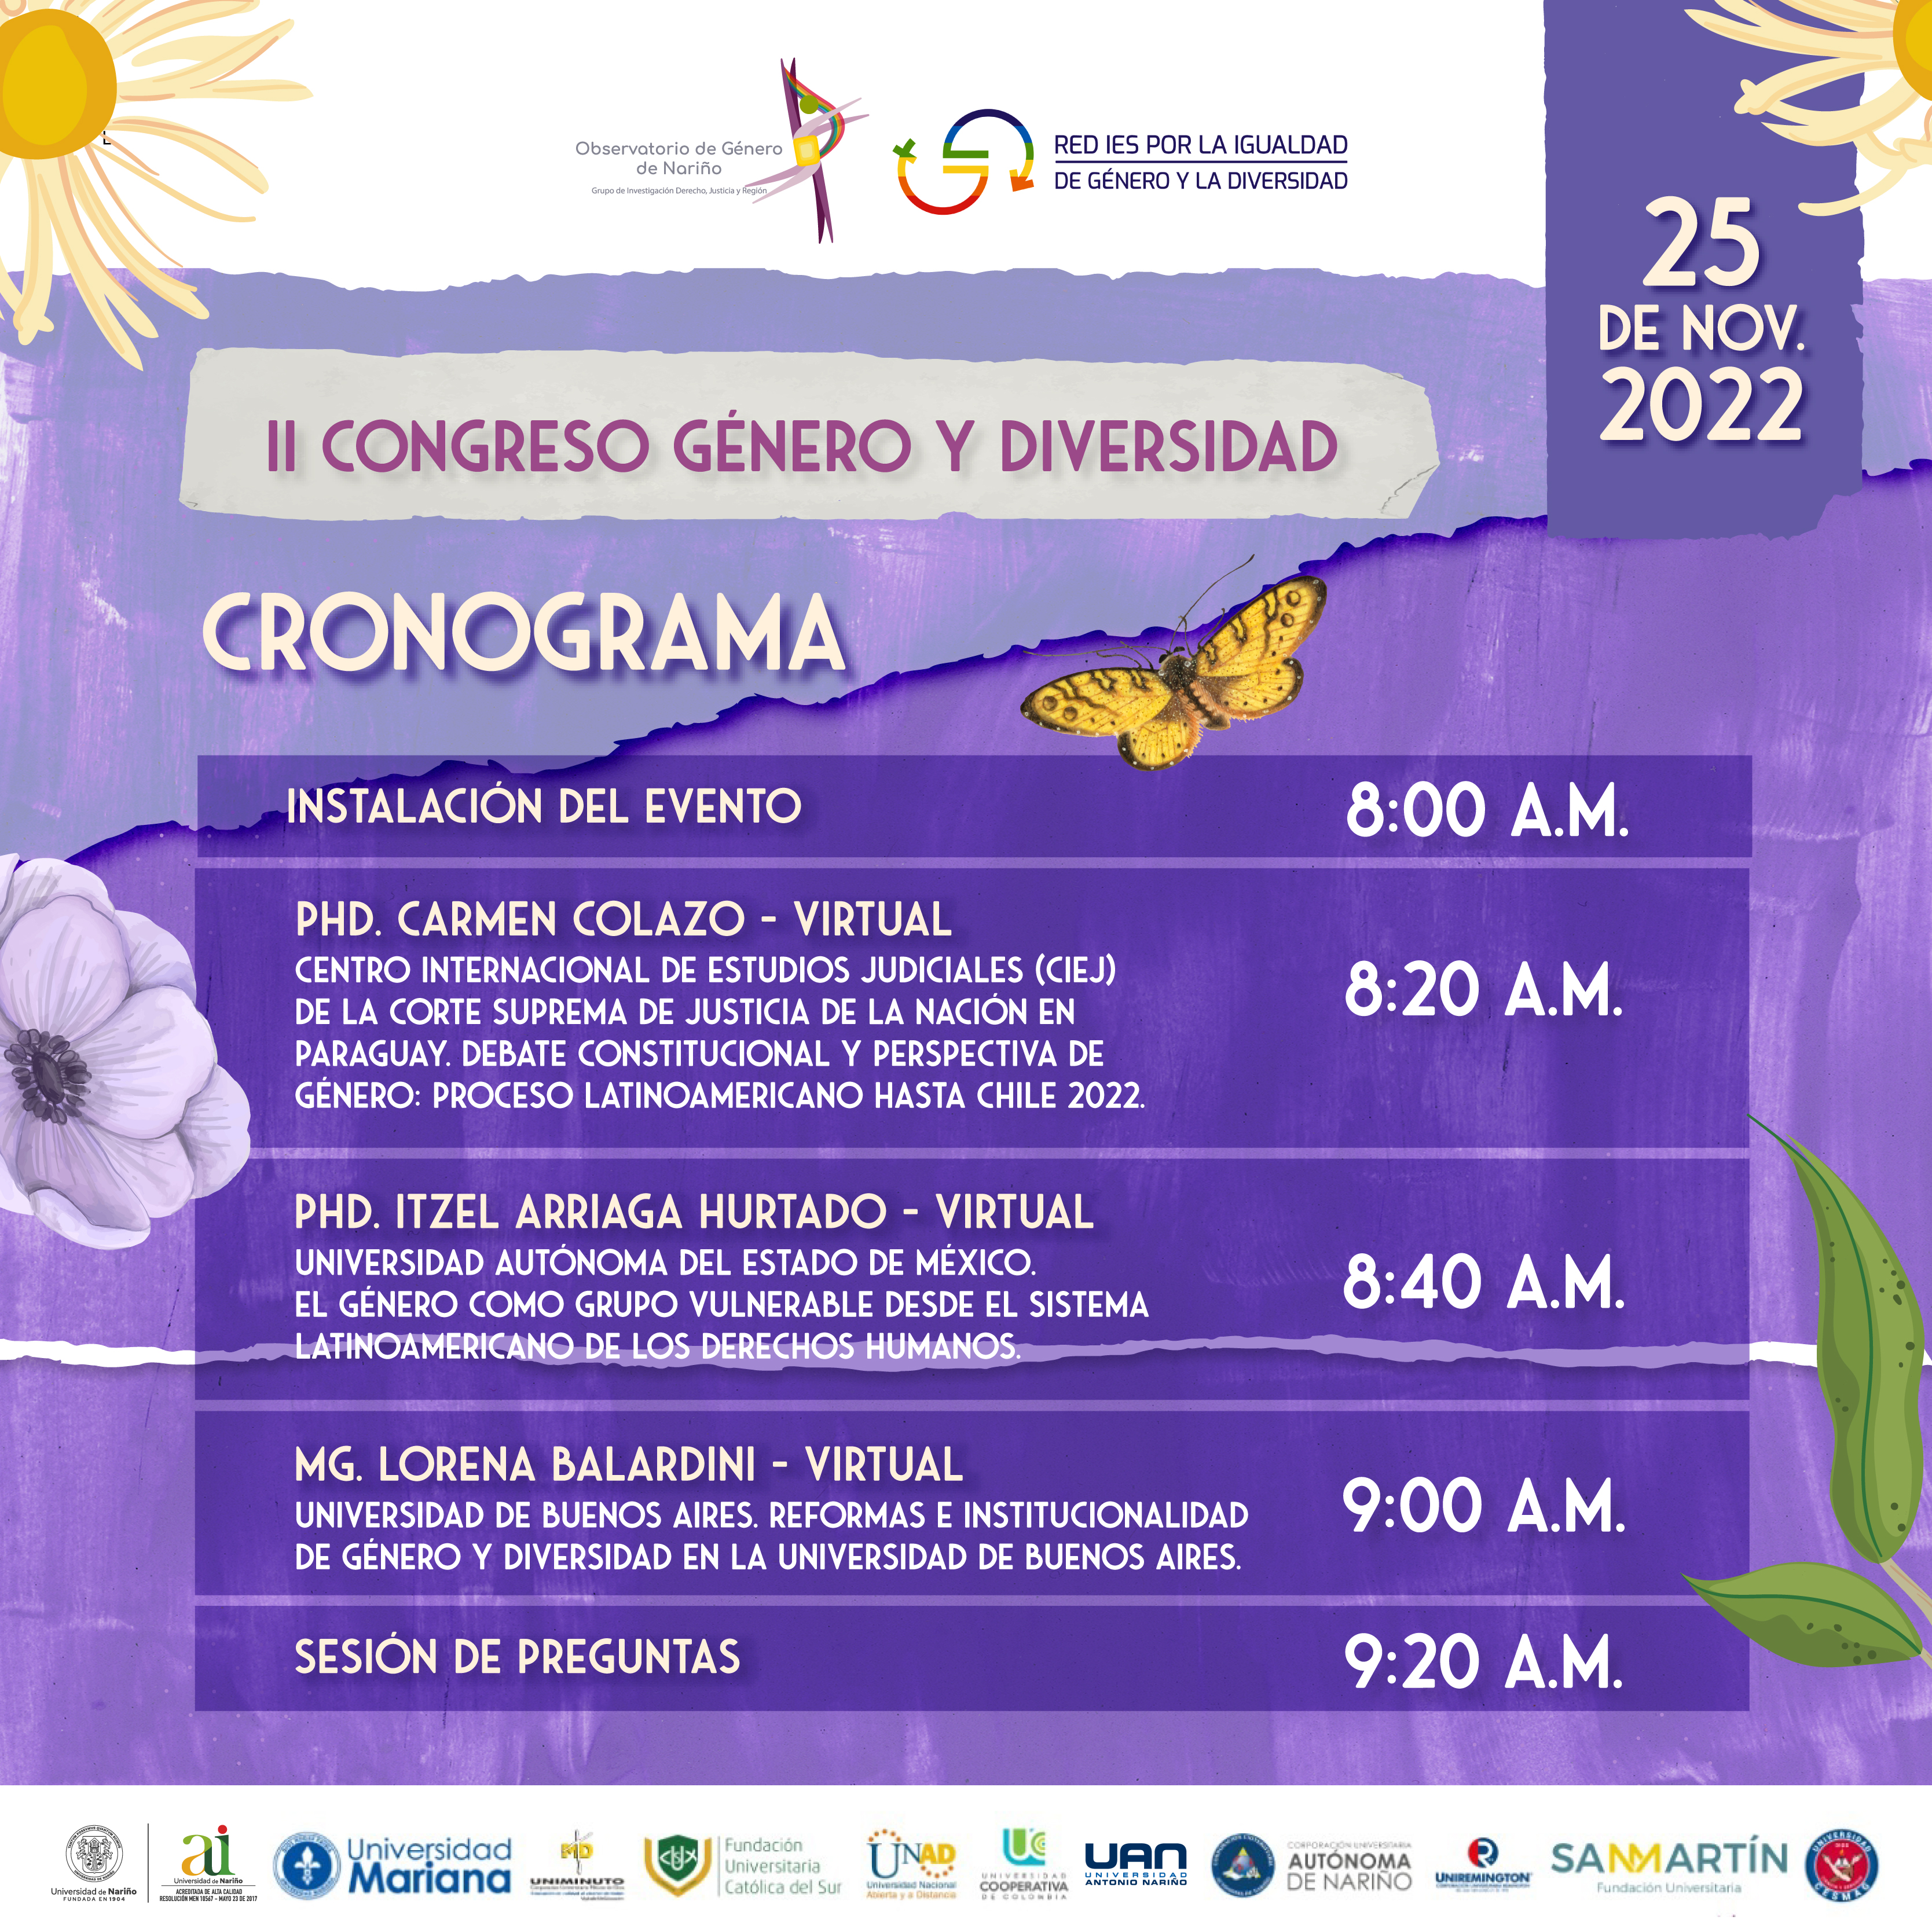 UDENAR-PERIODICO-II-Congreso-Genero-Diversidad-CRONOGRAMA